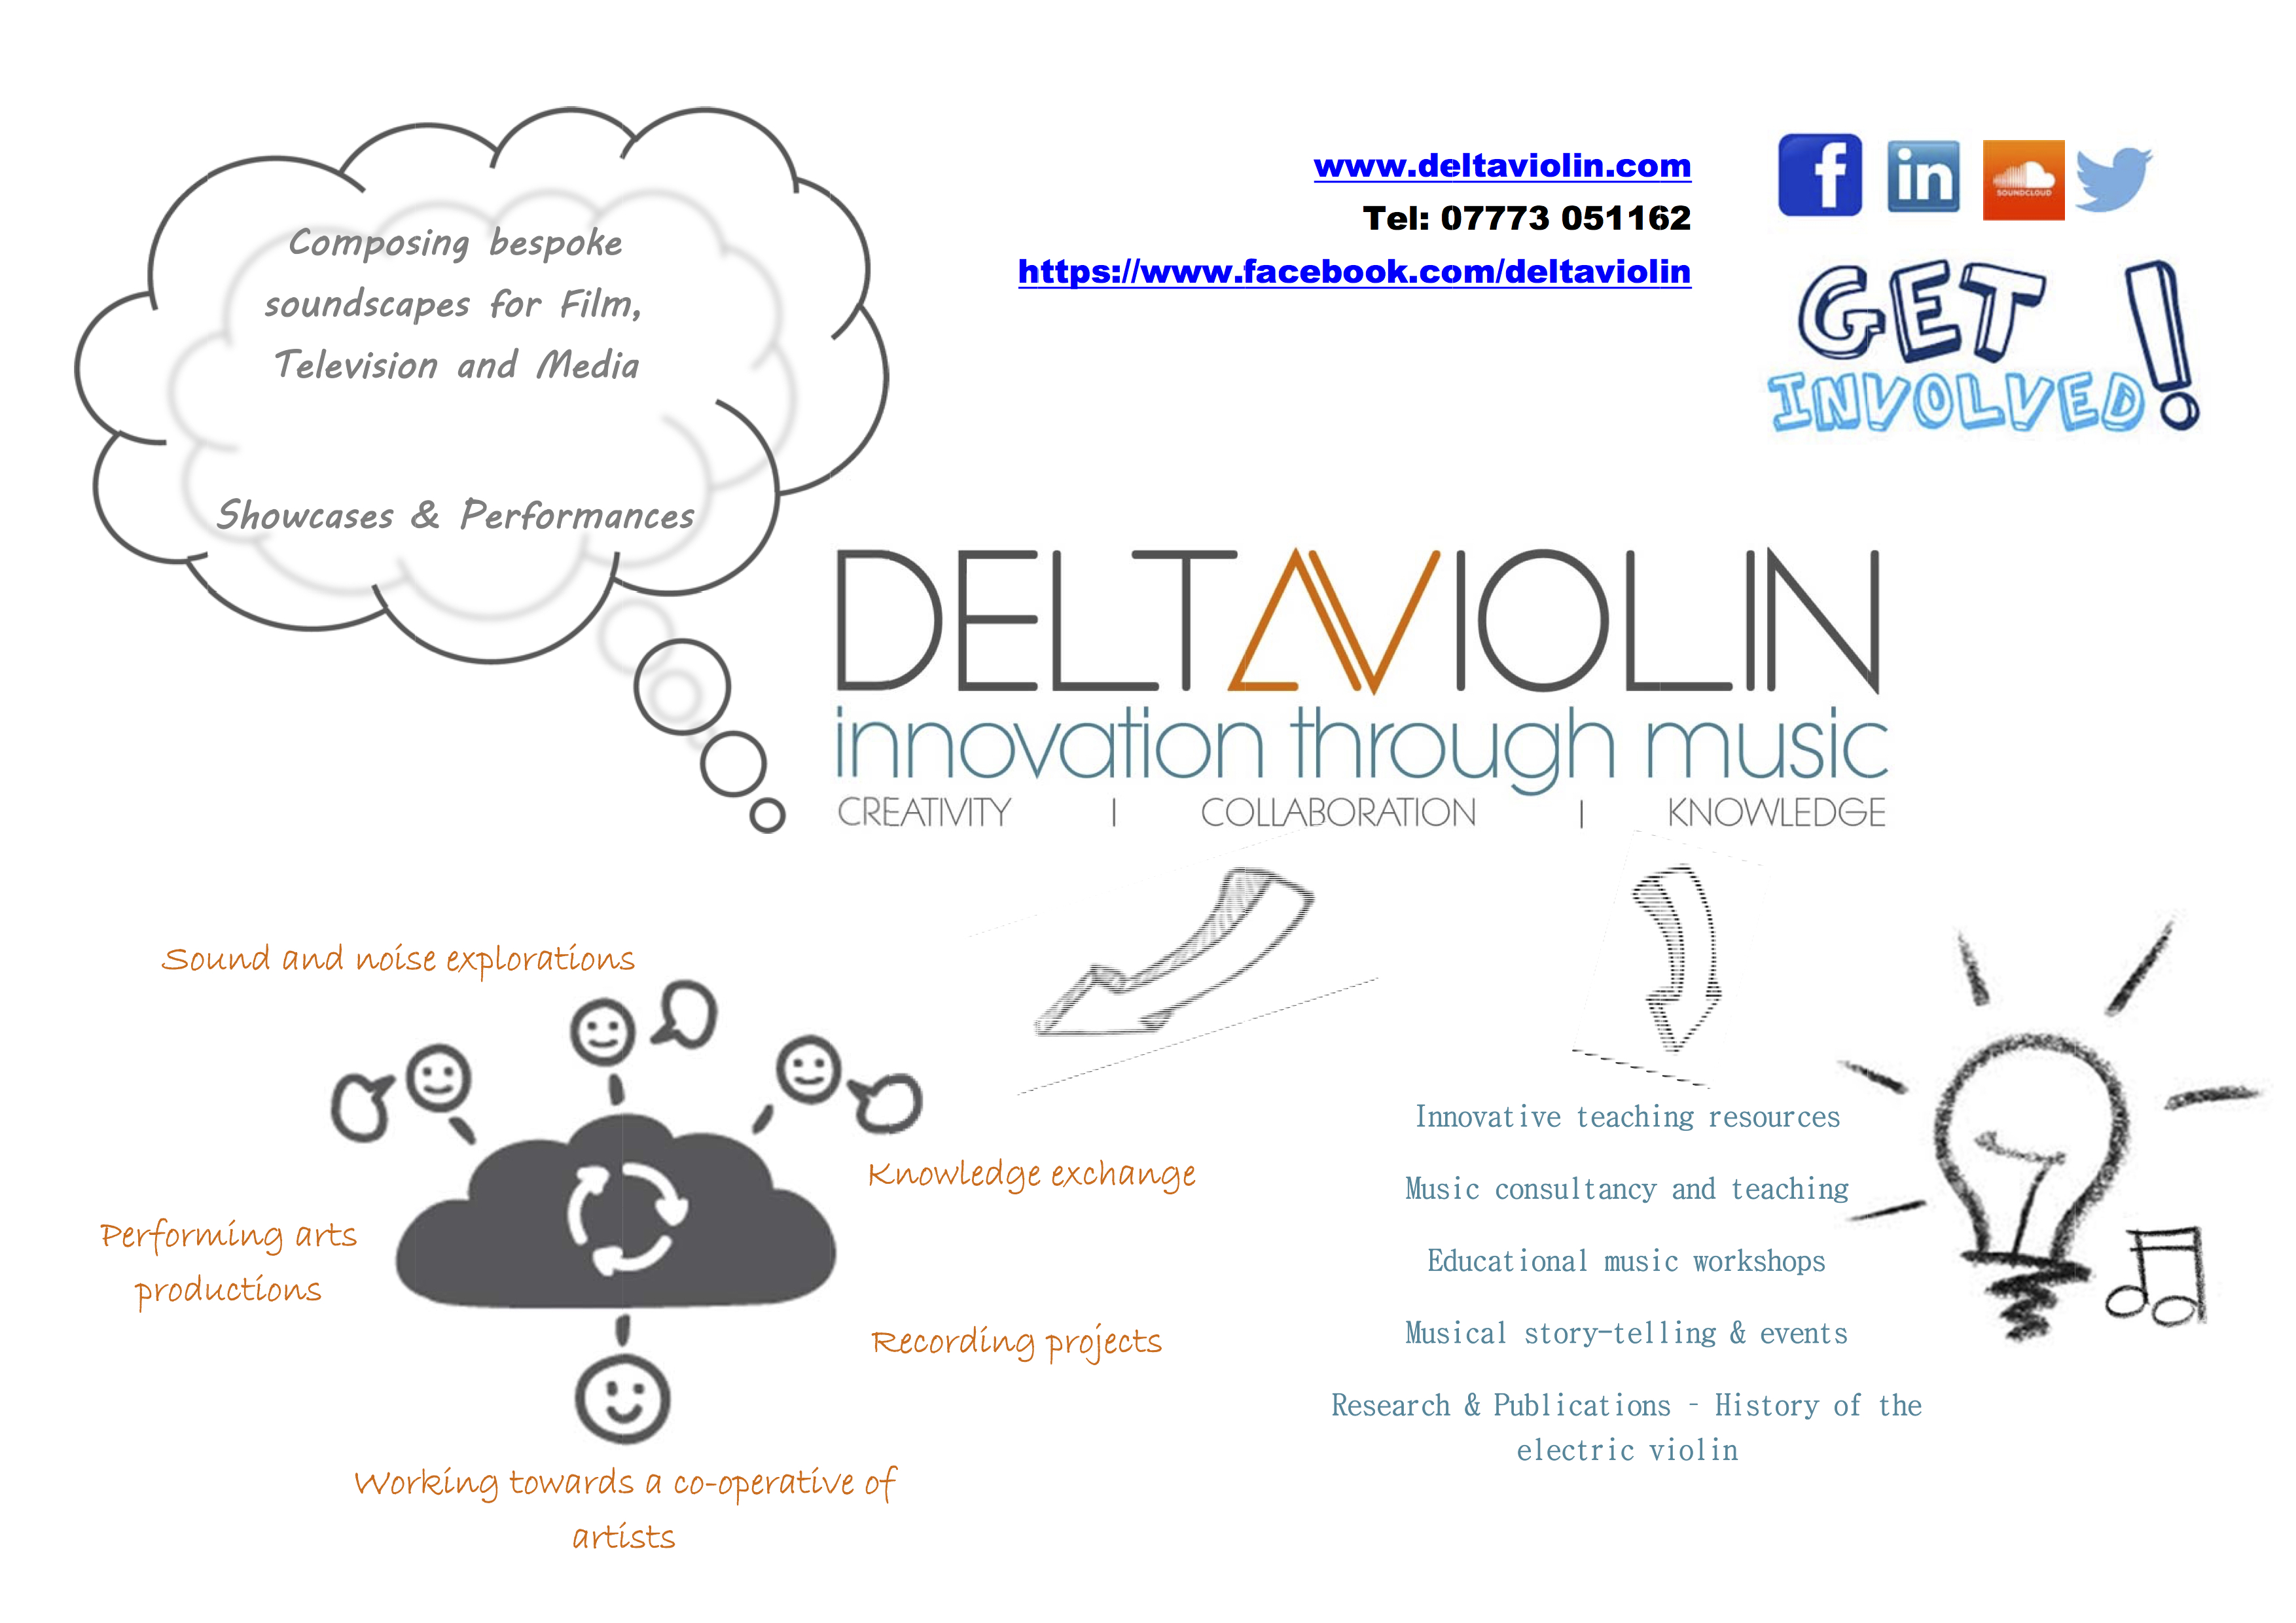 Deltaviolin launch flyer_May 2015